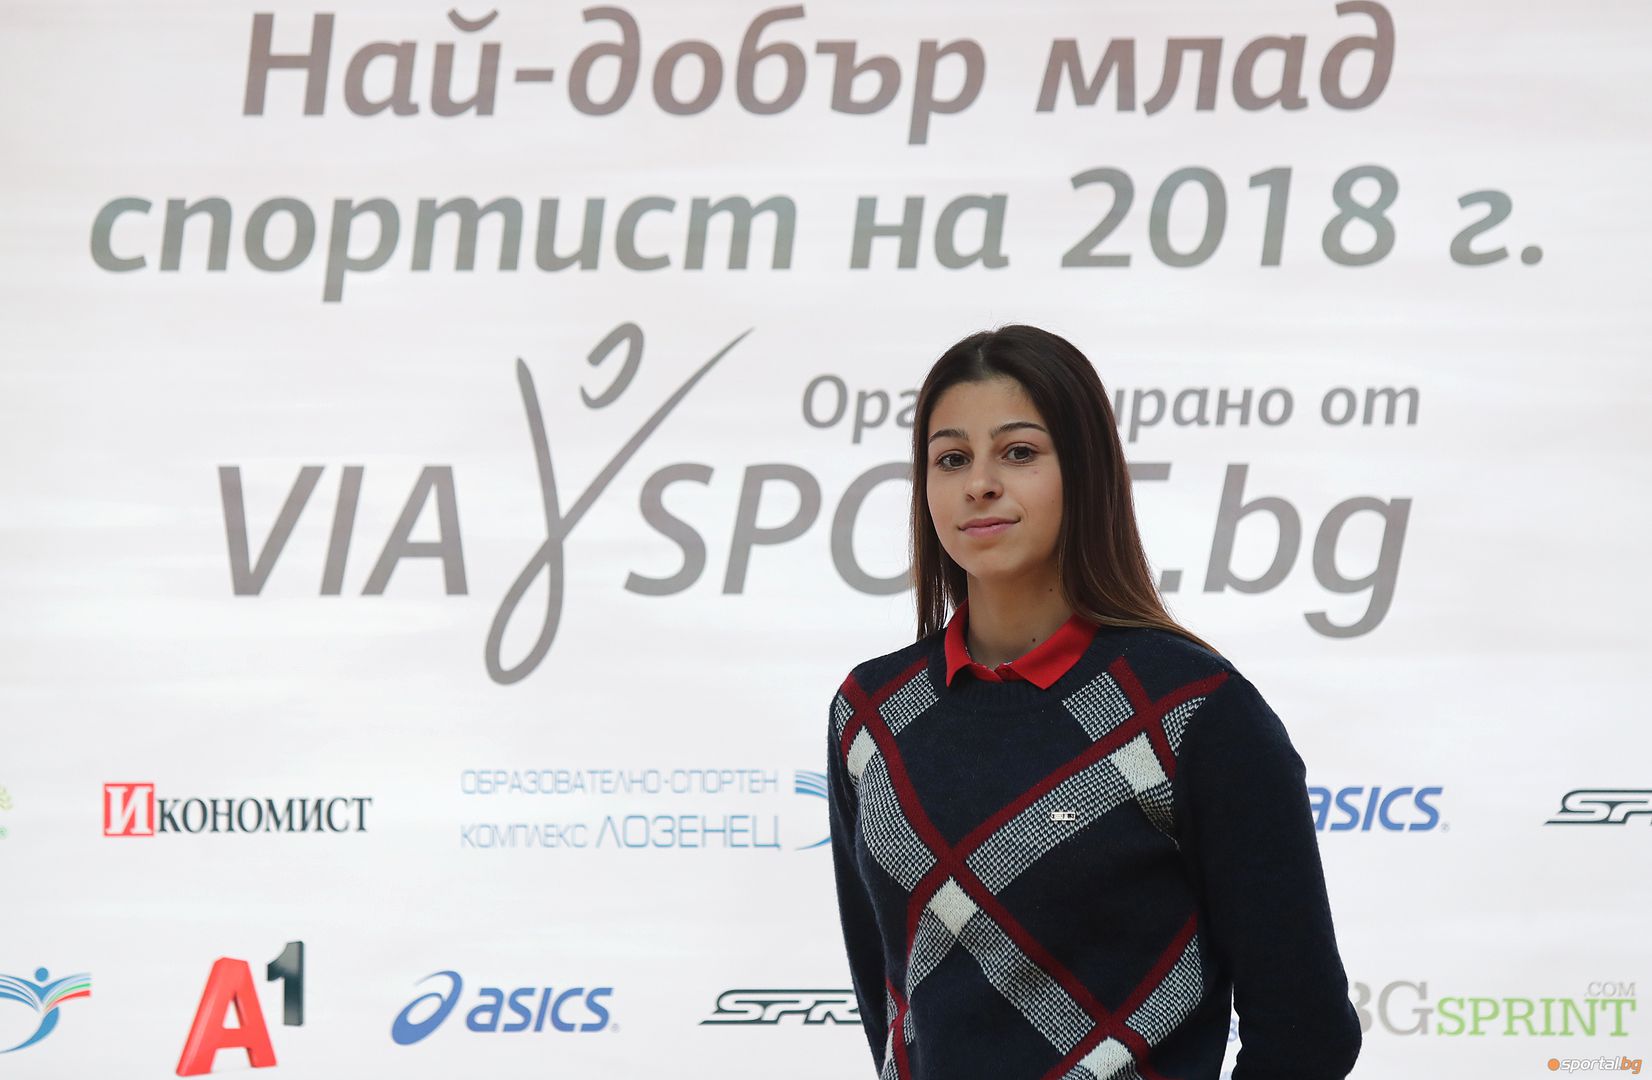 Александра Начева е най-добрият млад спортист на България за 2018 г.